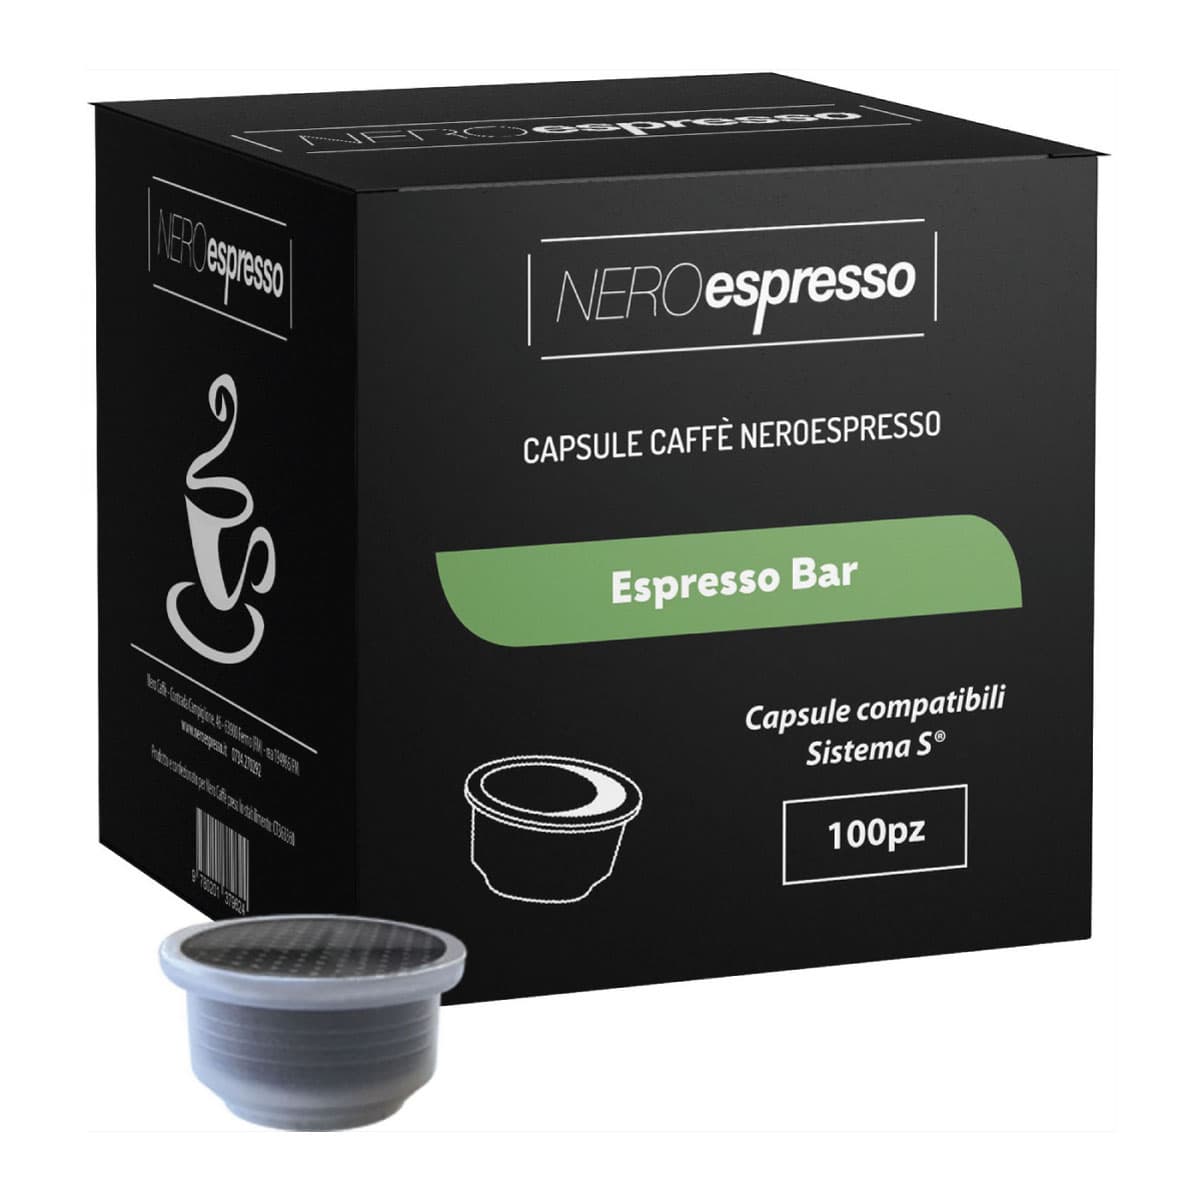 100 Capsule Caffè “Espresso Bar” Compatibili Sistema S - Nero Espresso